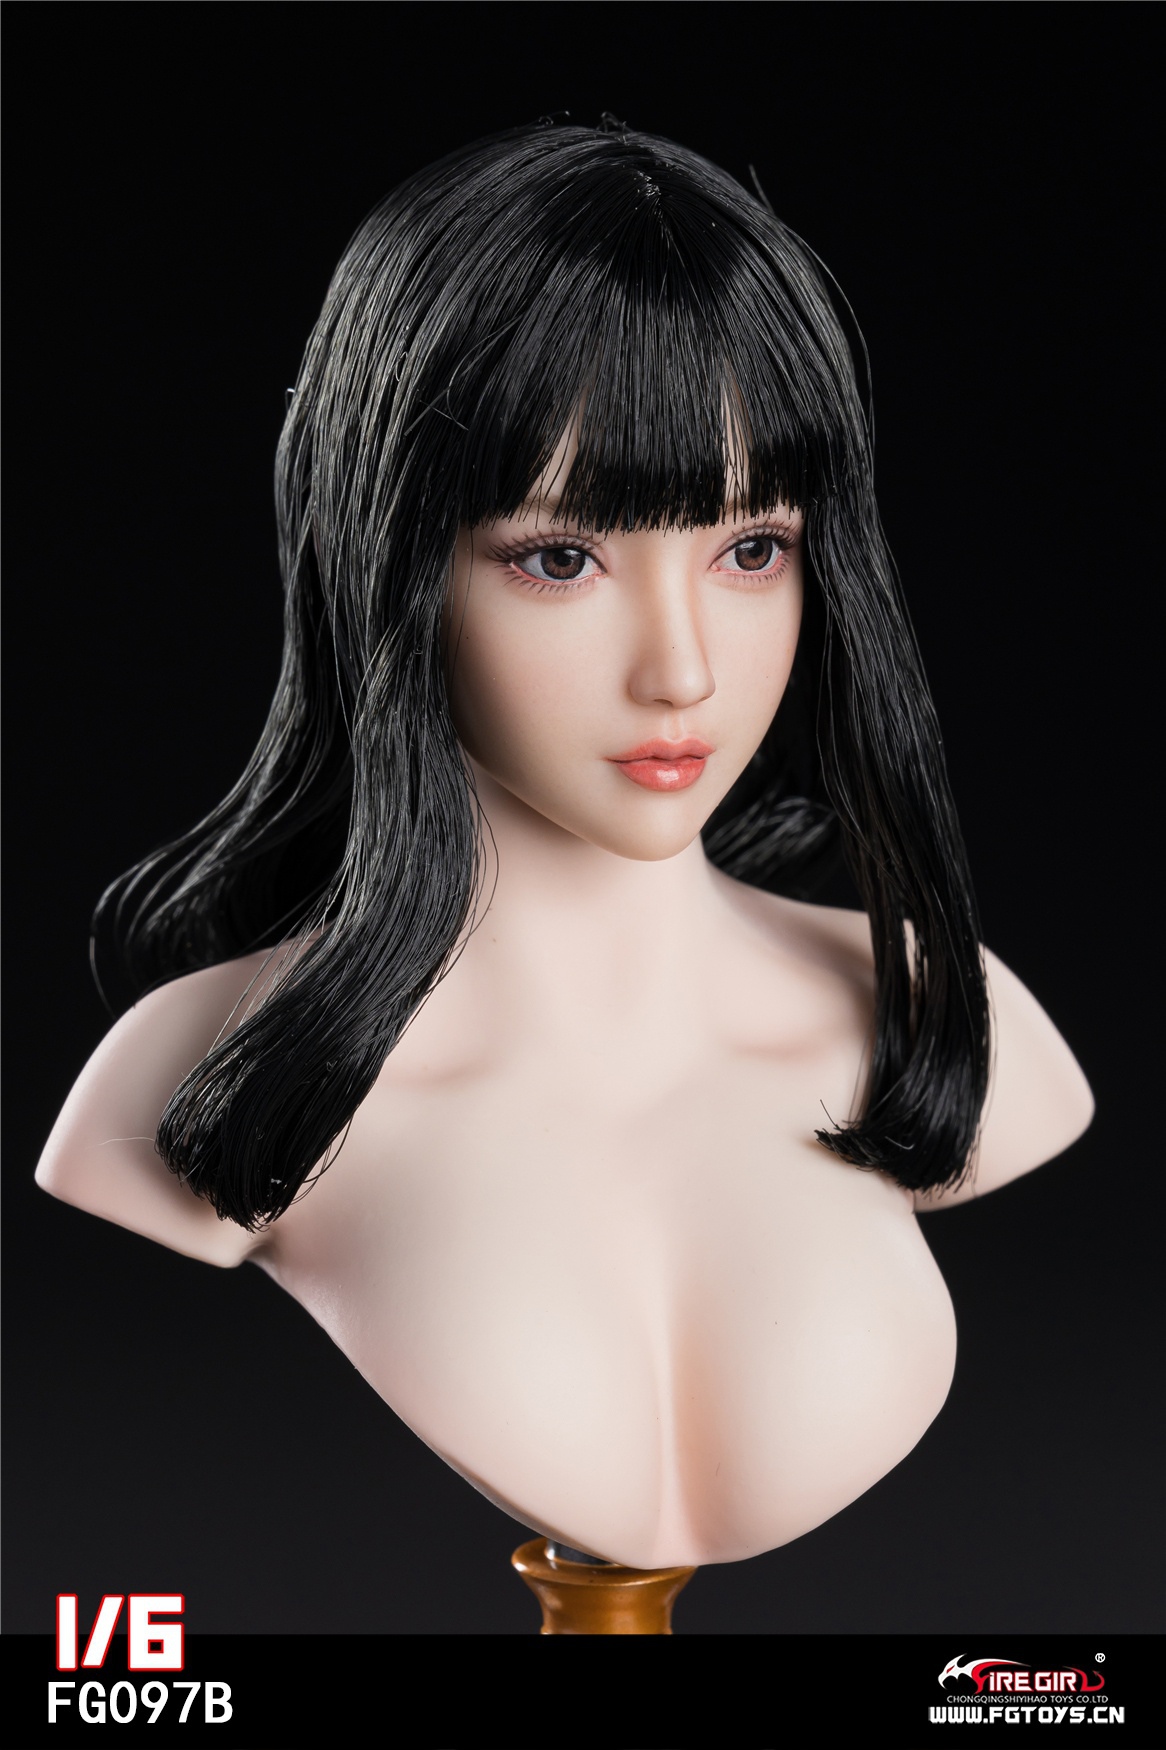 firegirl - NEW PRODUCT: Fire Girl Toys: Asian Girl Head Sculpture (FG097A/FG097B/FG097C) 1173